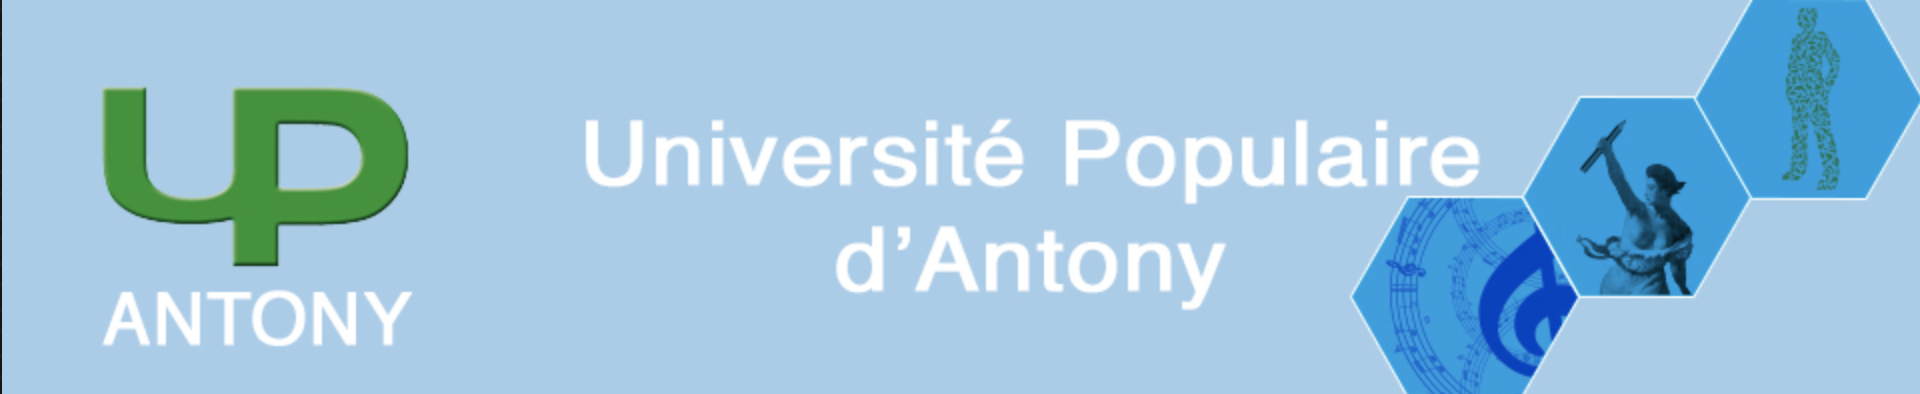 Université Populaire d’Antony (UPA)